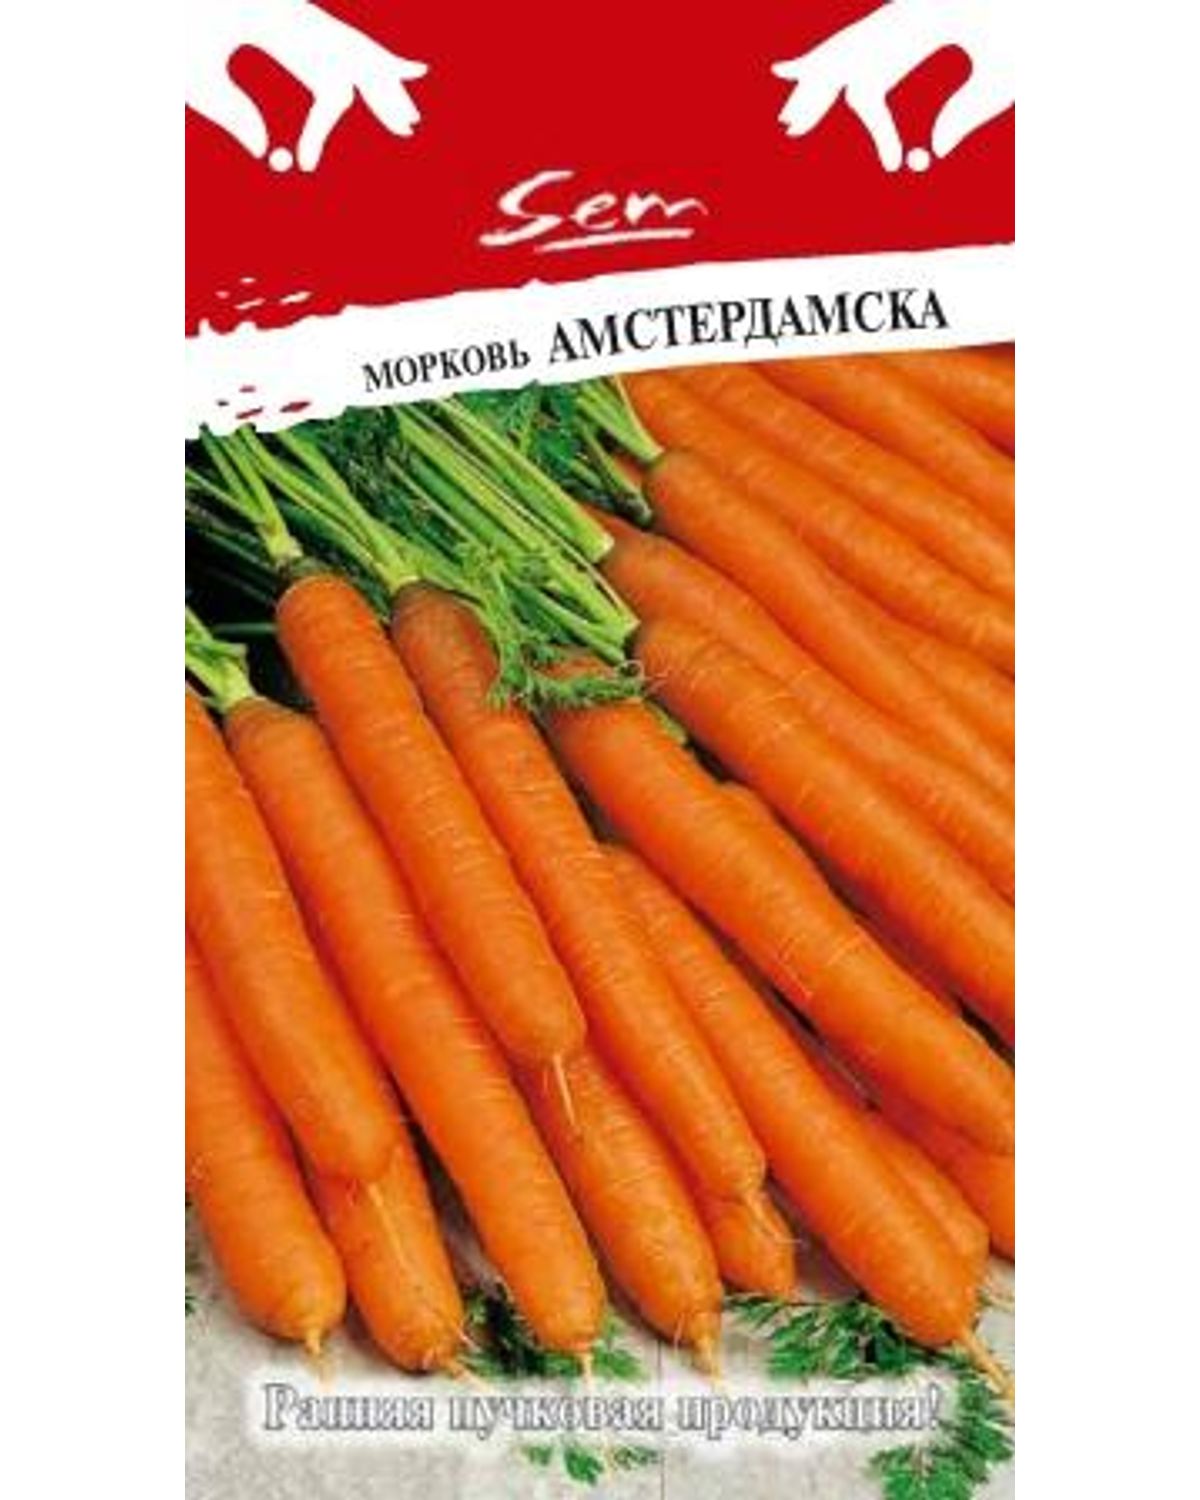 Семена морковь Русский огород Амстердамска 313026 1 уп. - отзывыпокупателей на Мегамаркет